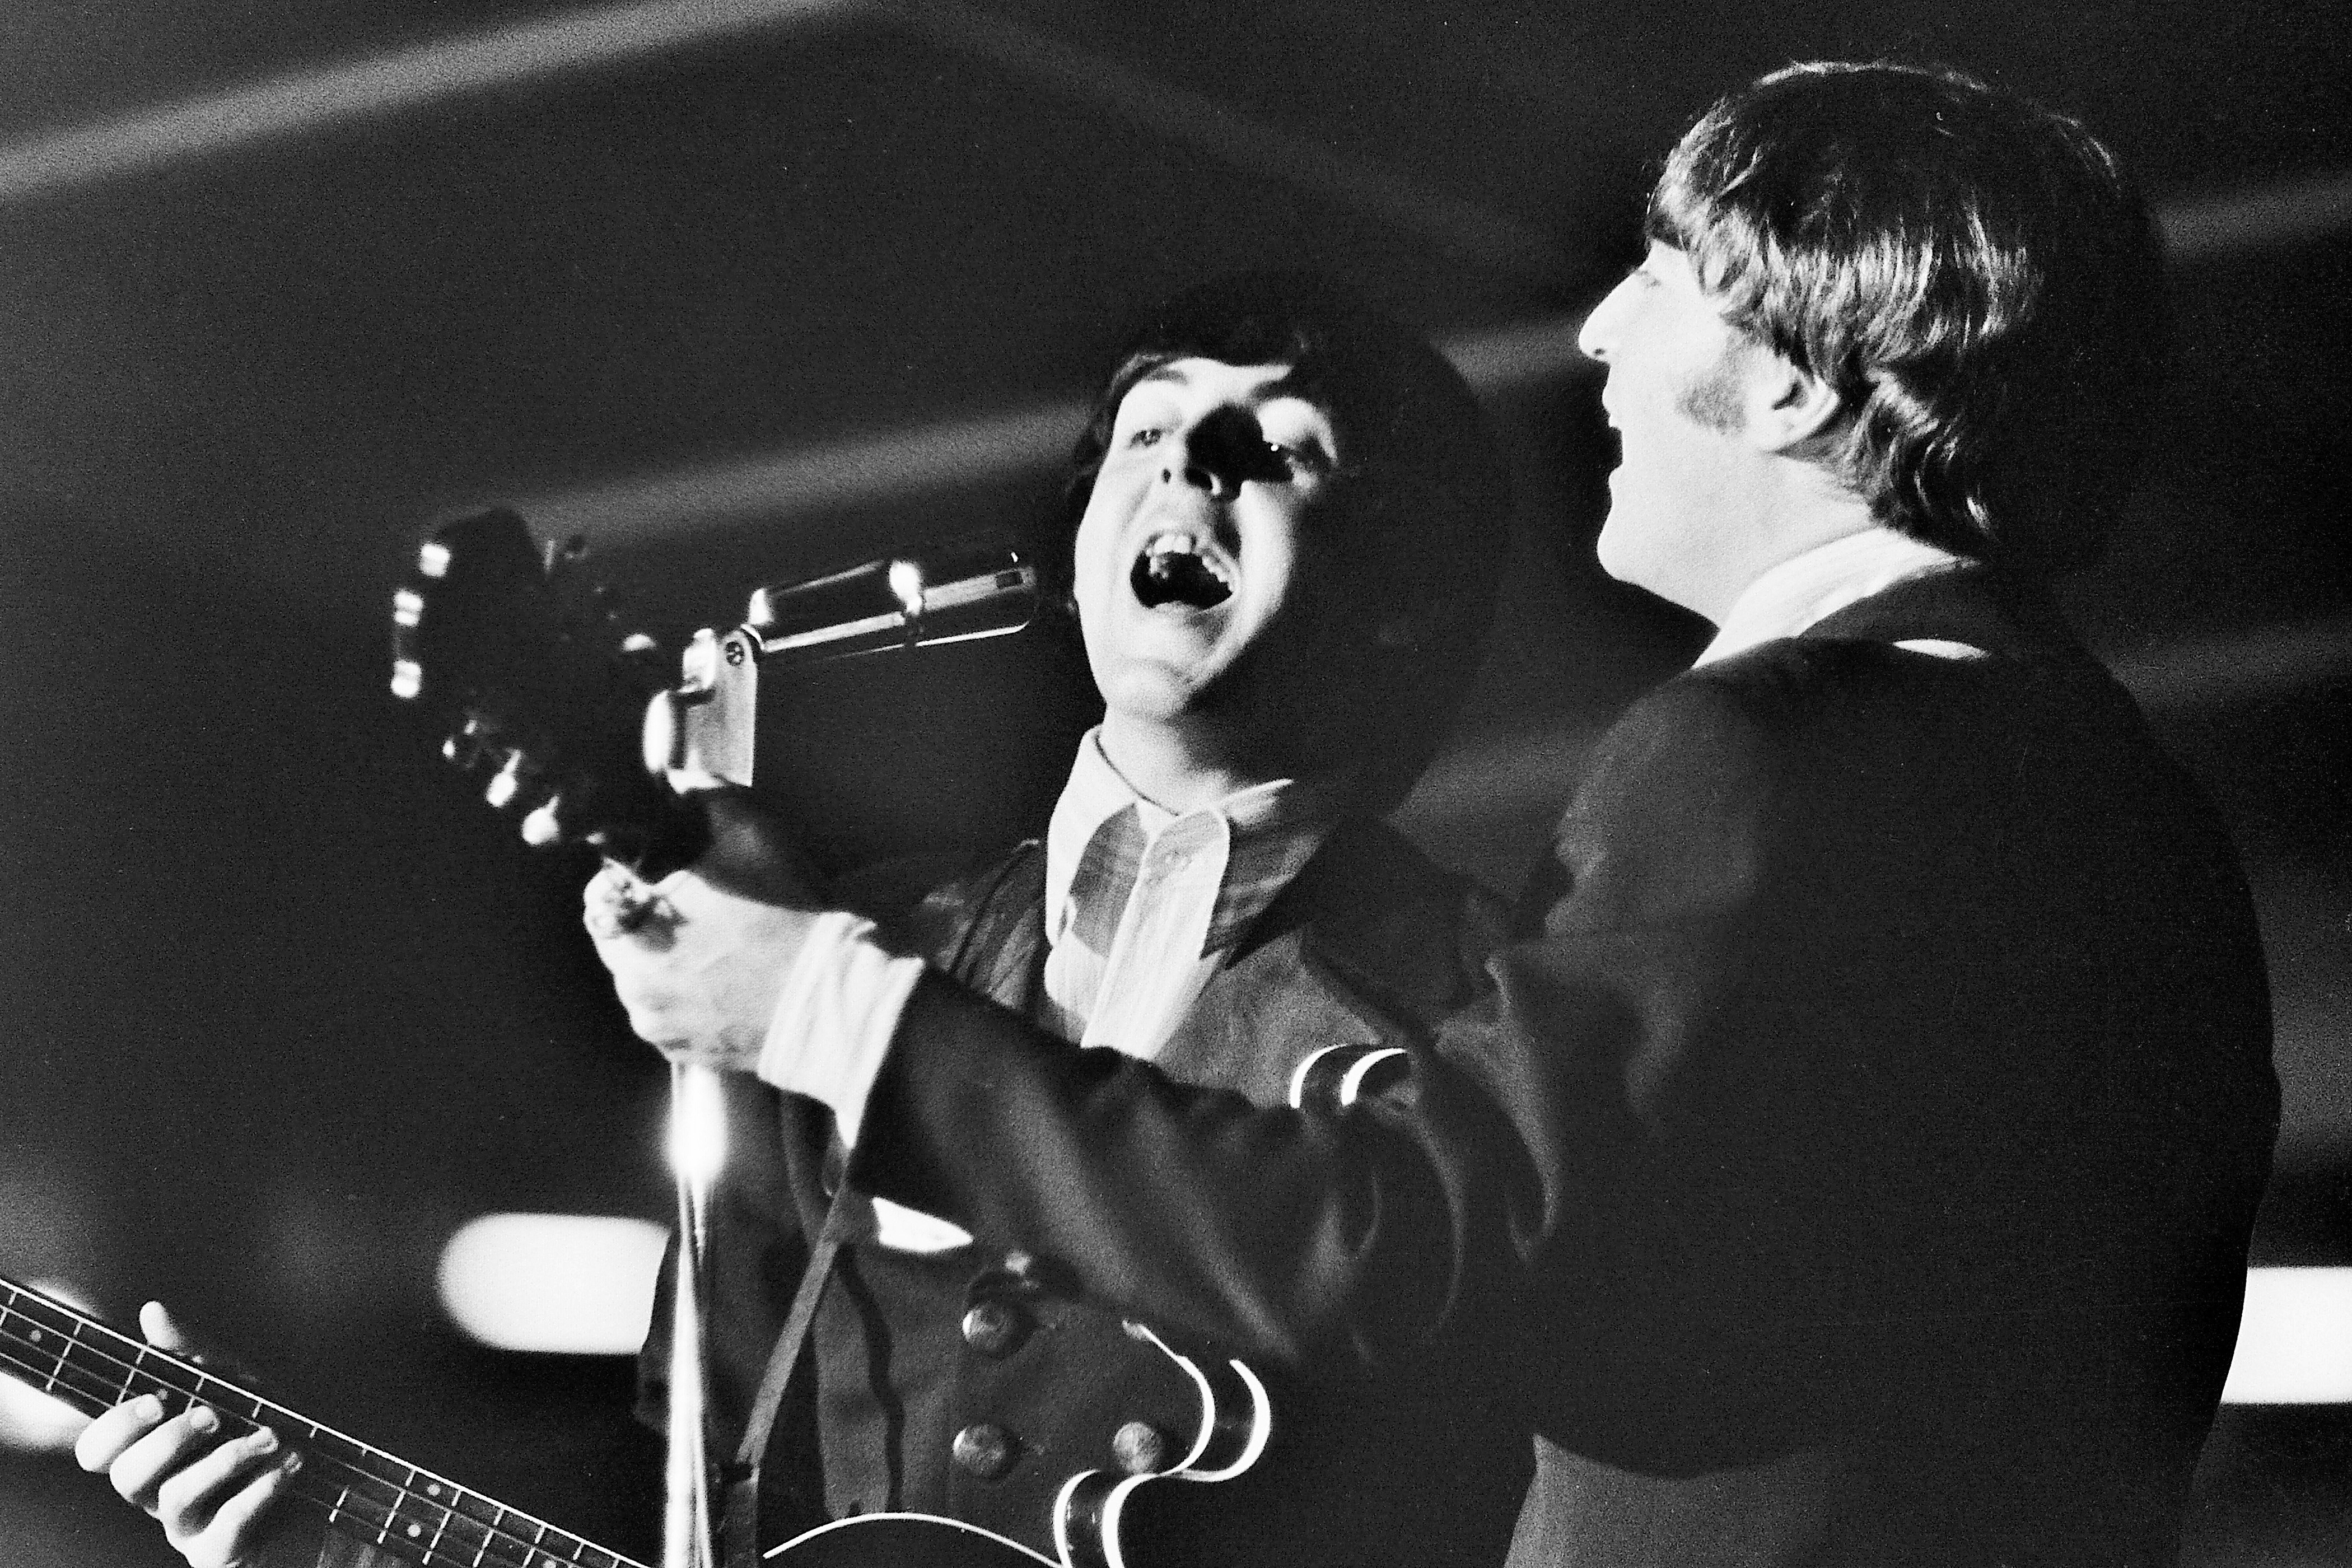 Macca à época em que tocava nos Beatles - imagem, ao lado de Lennon (Foto: Getty Images)